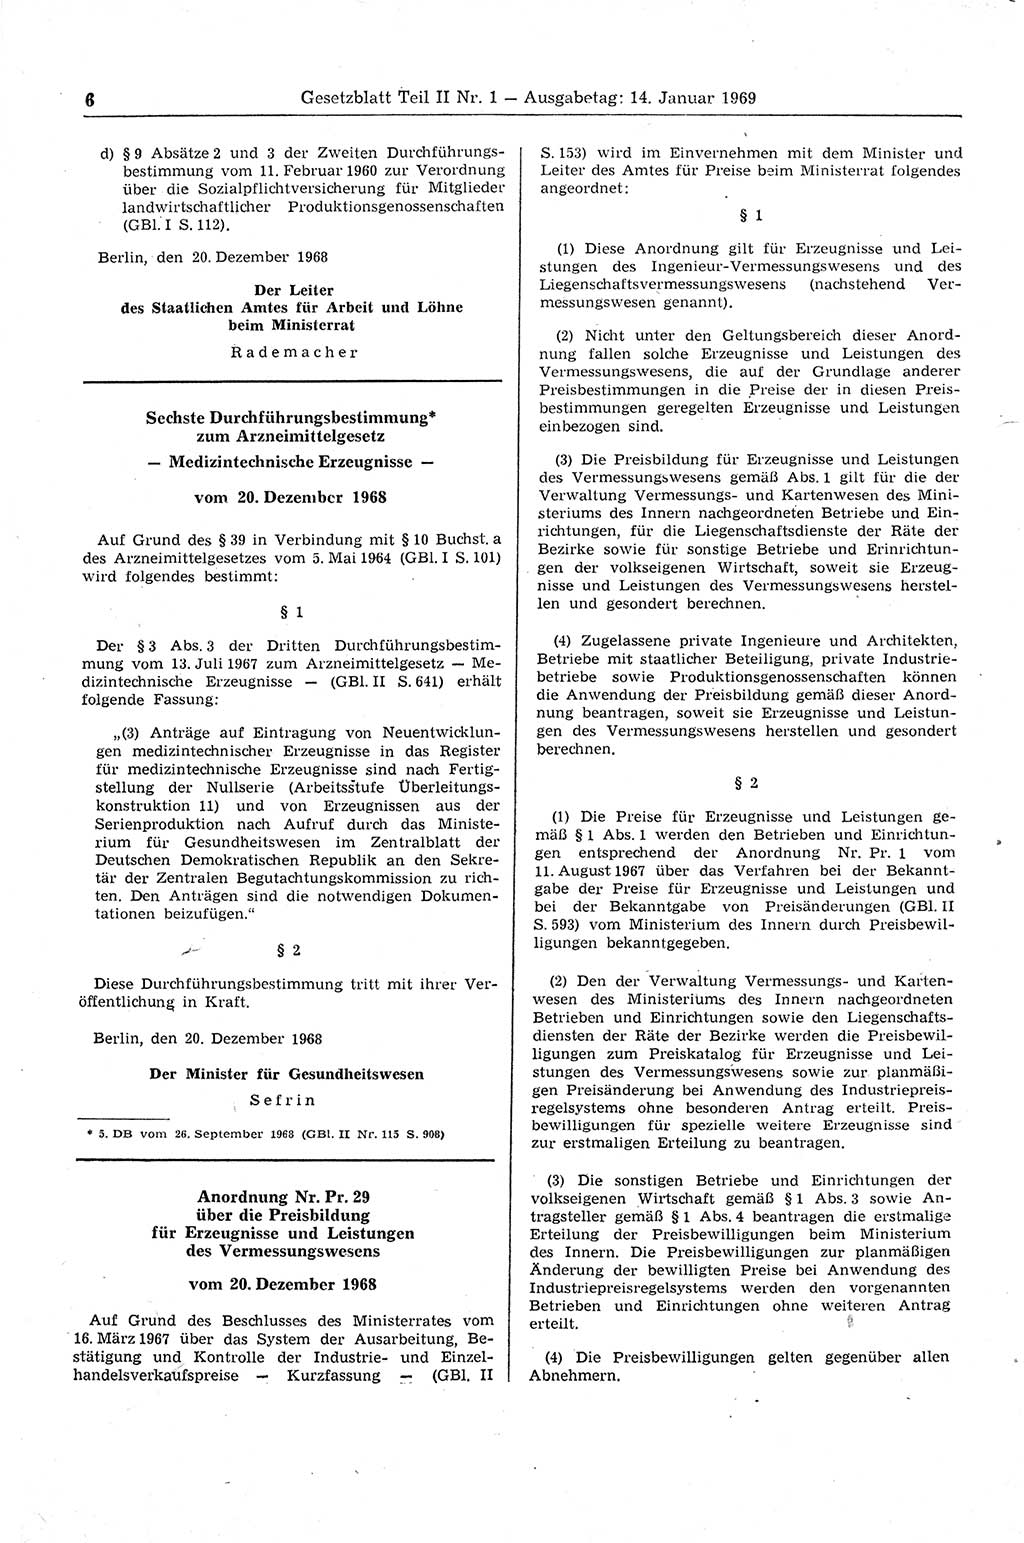 Gesetzblatt (GBl.) der Deutschen Demokratischen Republik (DDR) Teil ⅠⅠ 1969, Seite 6 (GBl. DDR ⅠⅠ 1969, S. 6)